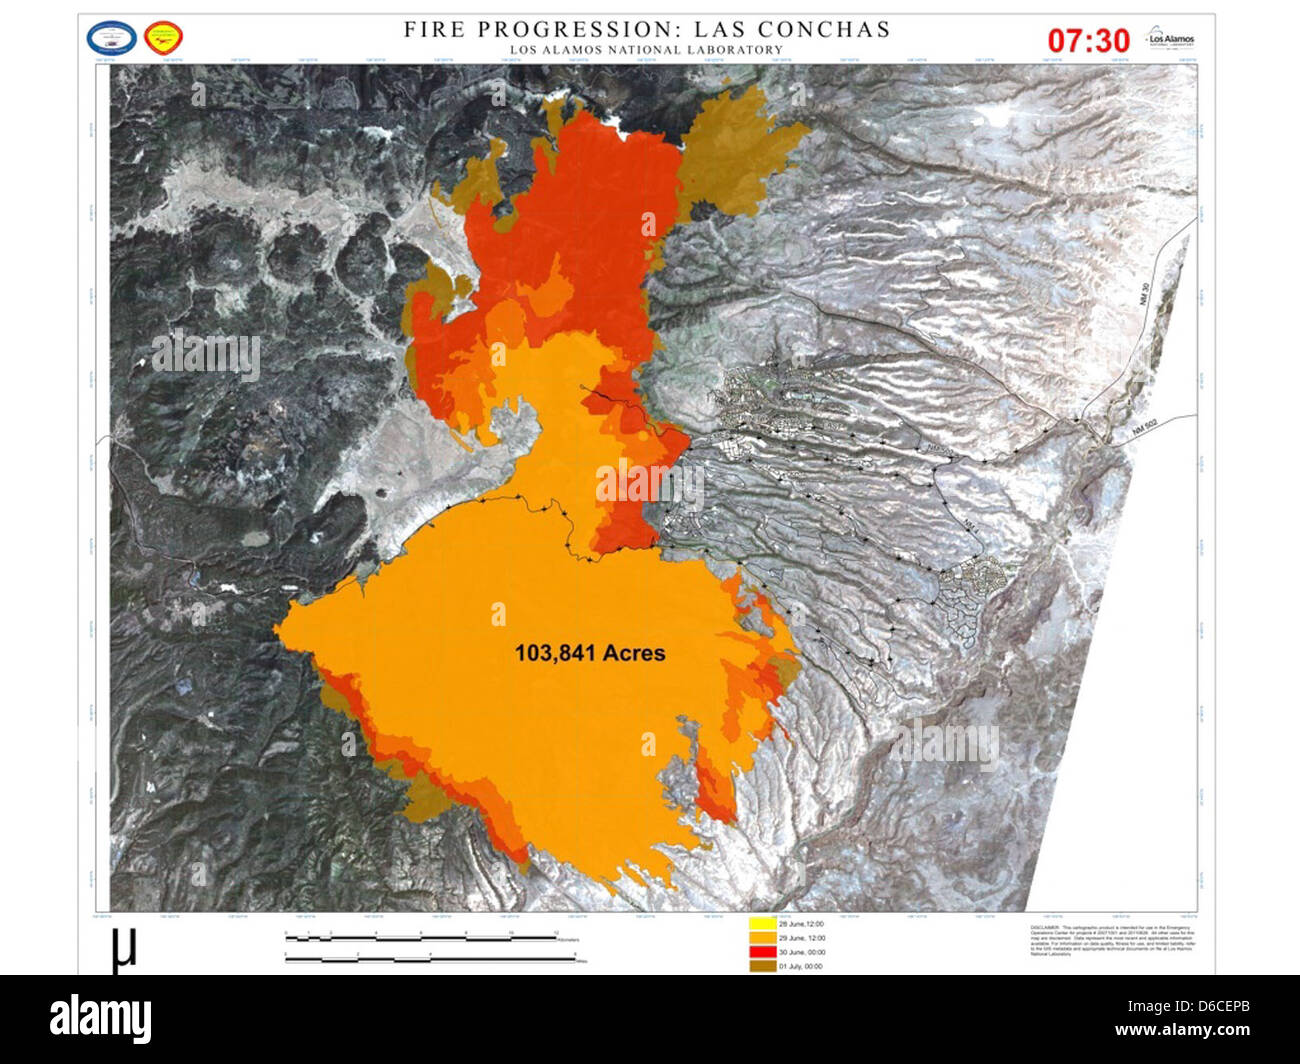 Fire-progression map, Las Conchas Stock Photo